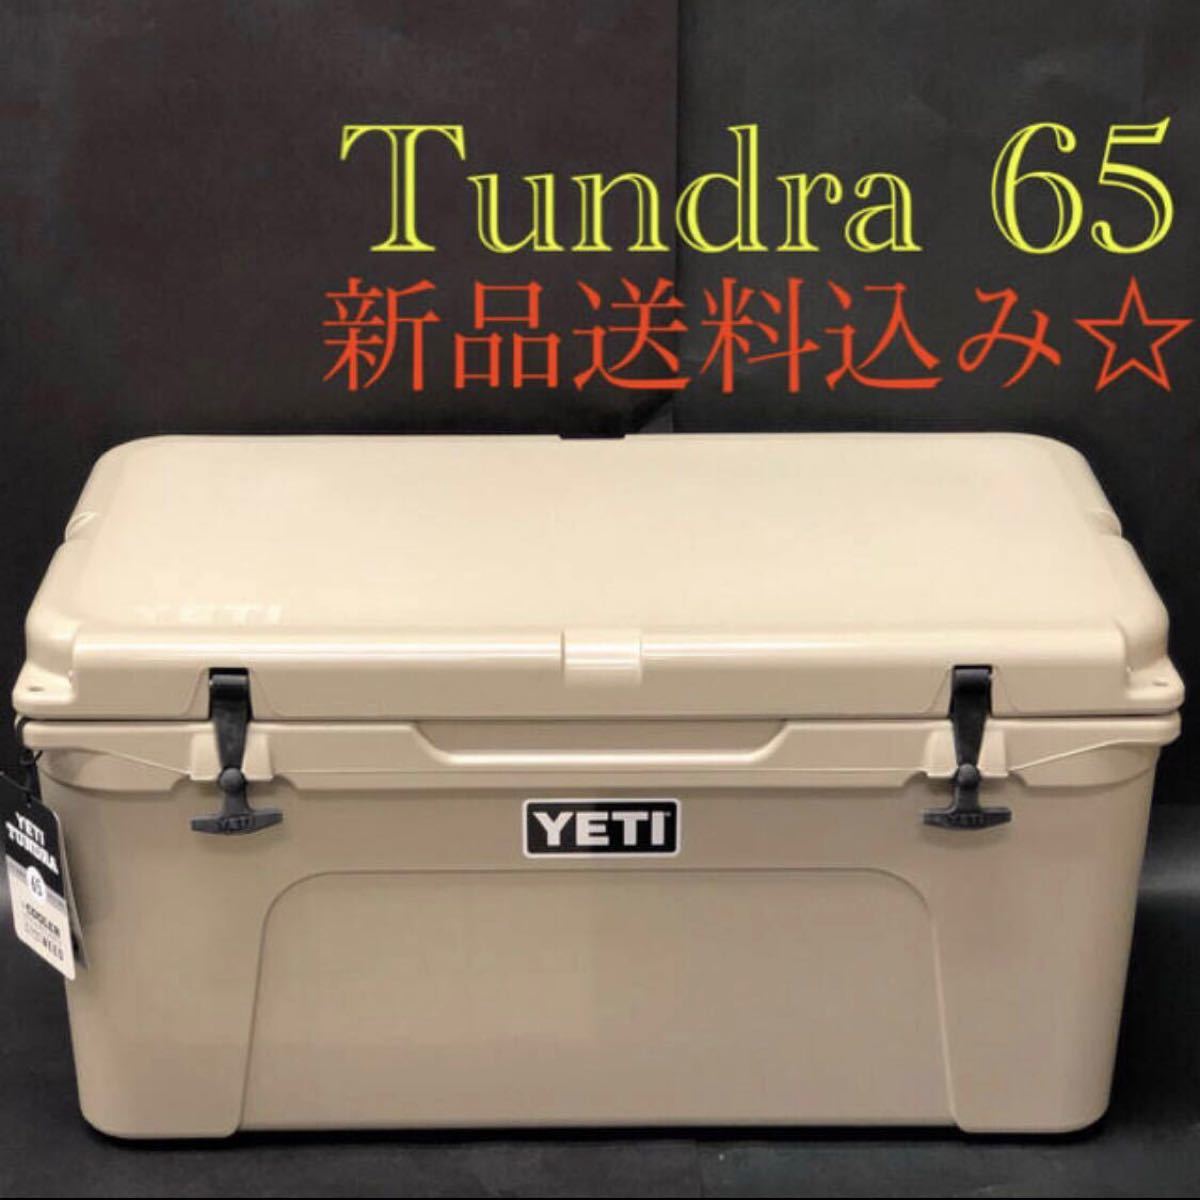 ☆新品☆ Yeti イエティ クーラー タンドラ tundra 65 タン クーラー